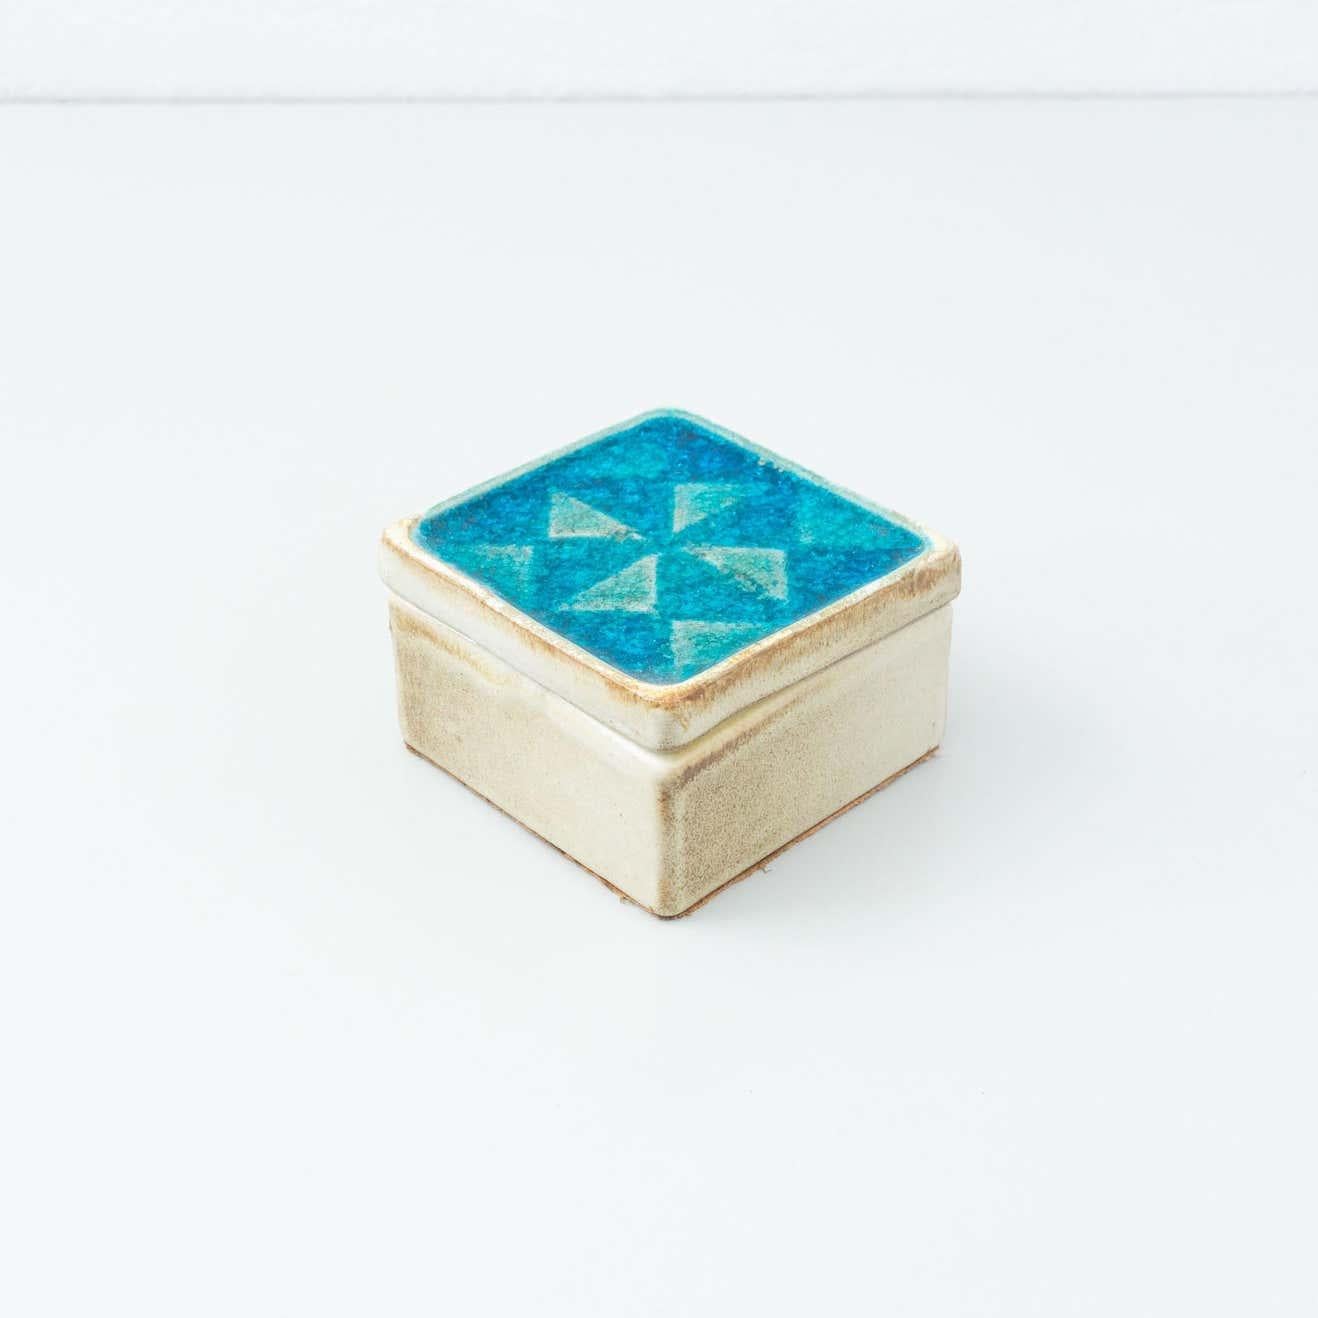 Vieille boîte en céramique émaillée bleue, base signée par Cases.
Par un artiste inconnu d'Espagne, vers 1960.

En état d'origine, avec une usure mineure conforme à l'âge et à l'utilisation, préservant une belle patine.

Matériau